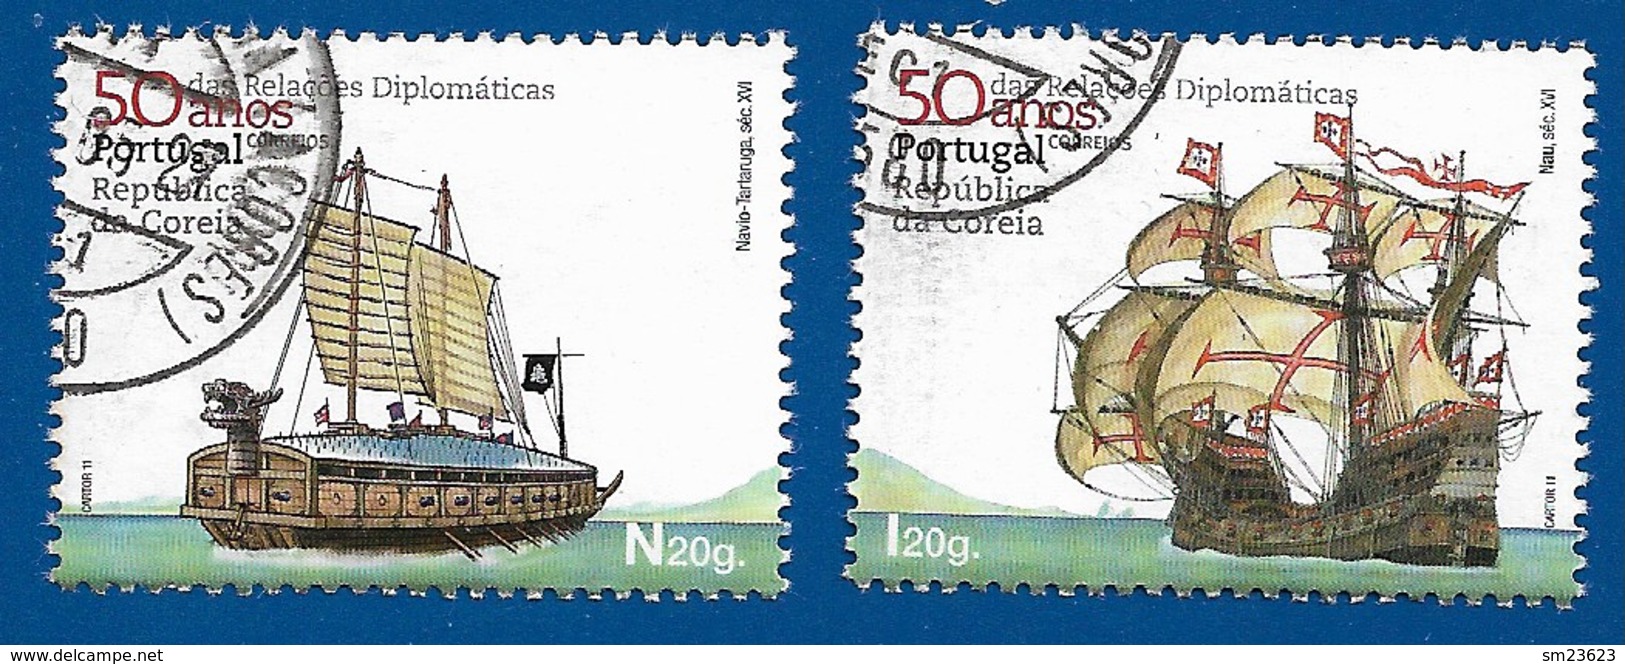 Portugal   2011  Mi.Nr. 3619 / 3620 , 50 Anos Das Relacöes Diplomaticas - Gestempelt / Fine Used / (o) - Usati